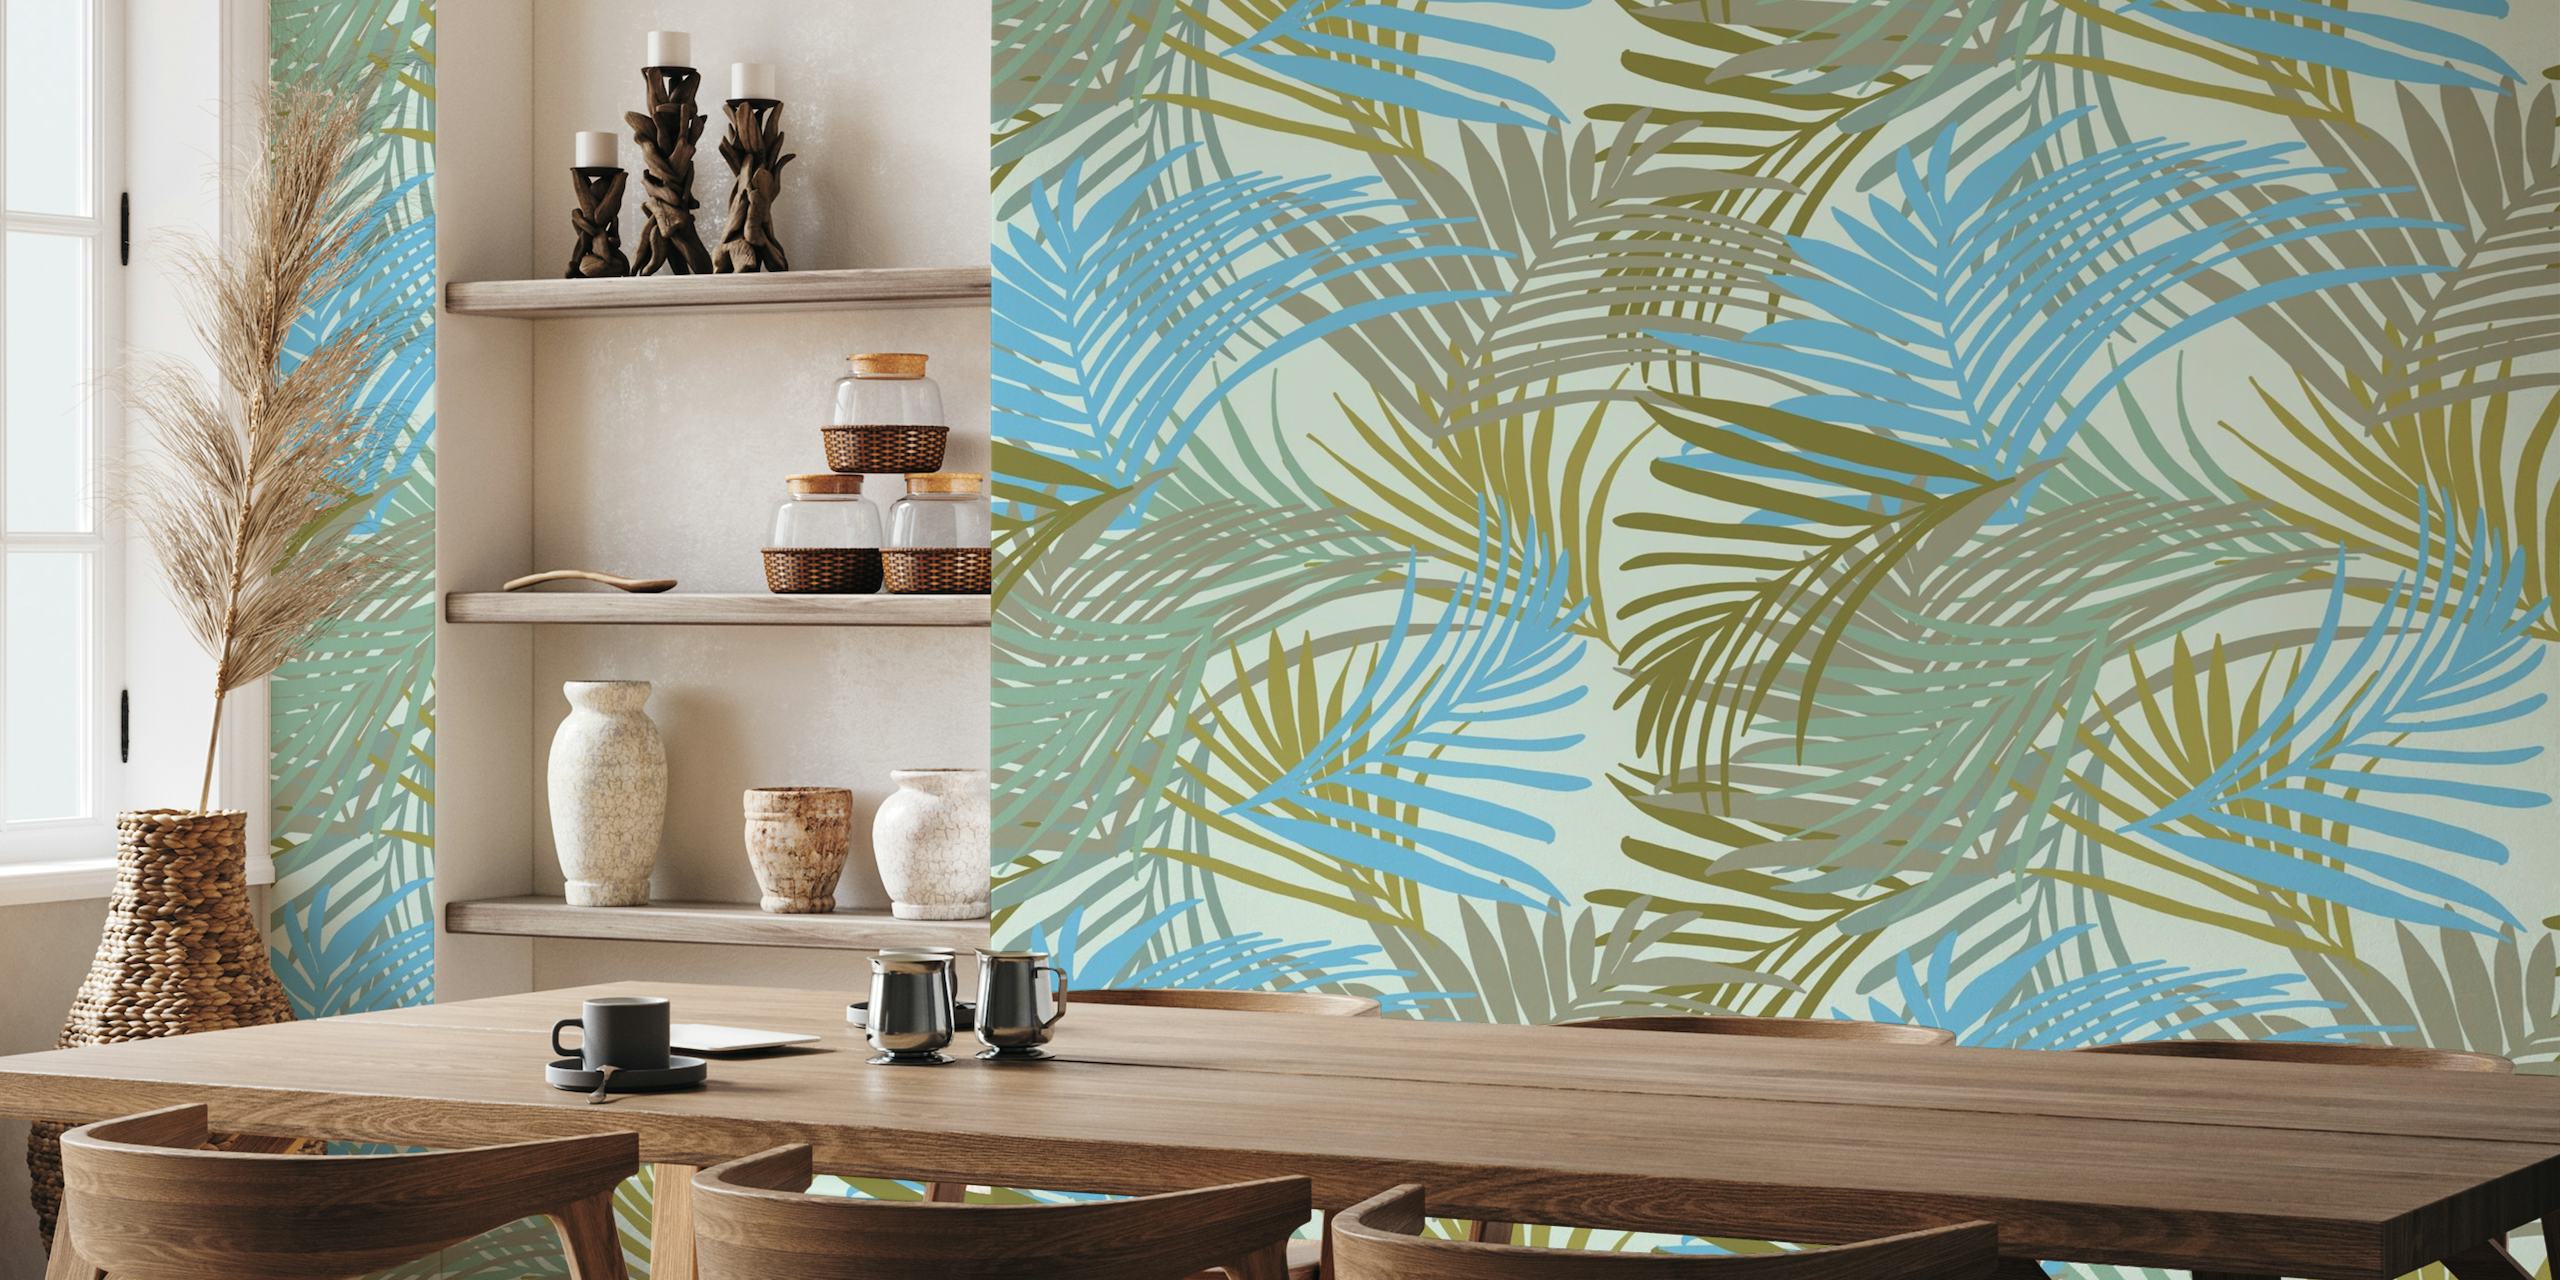 Tapet med tropisk palmebladmønster i nyanser av blått, grønt og khaki.